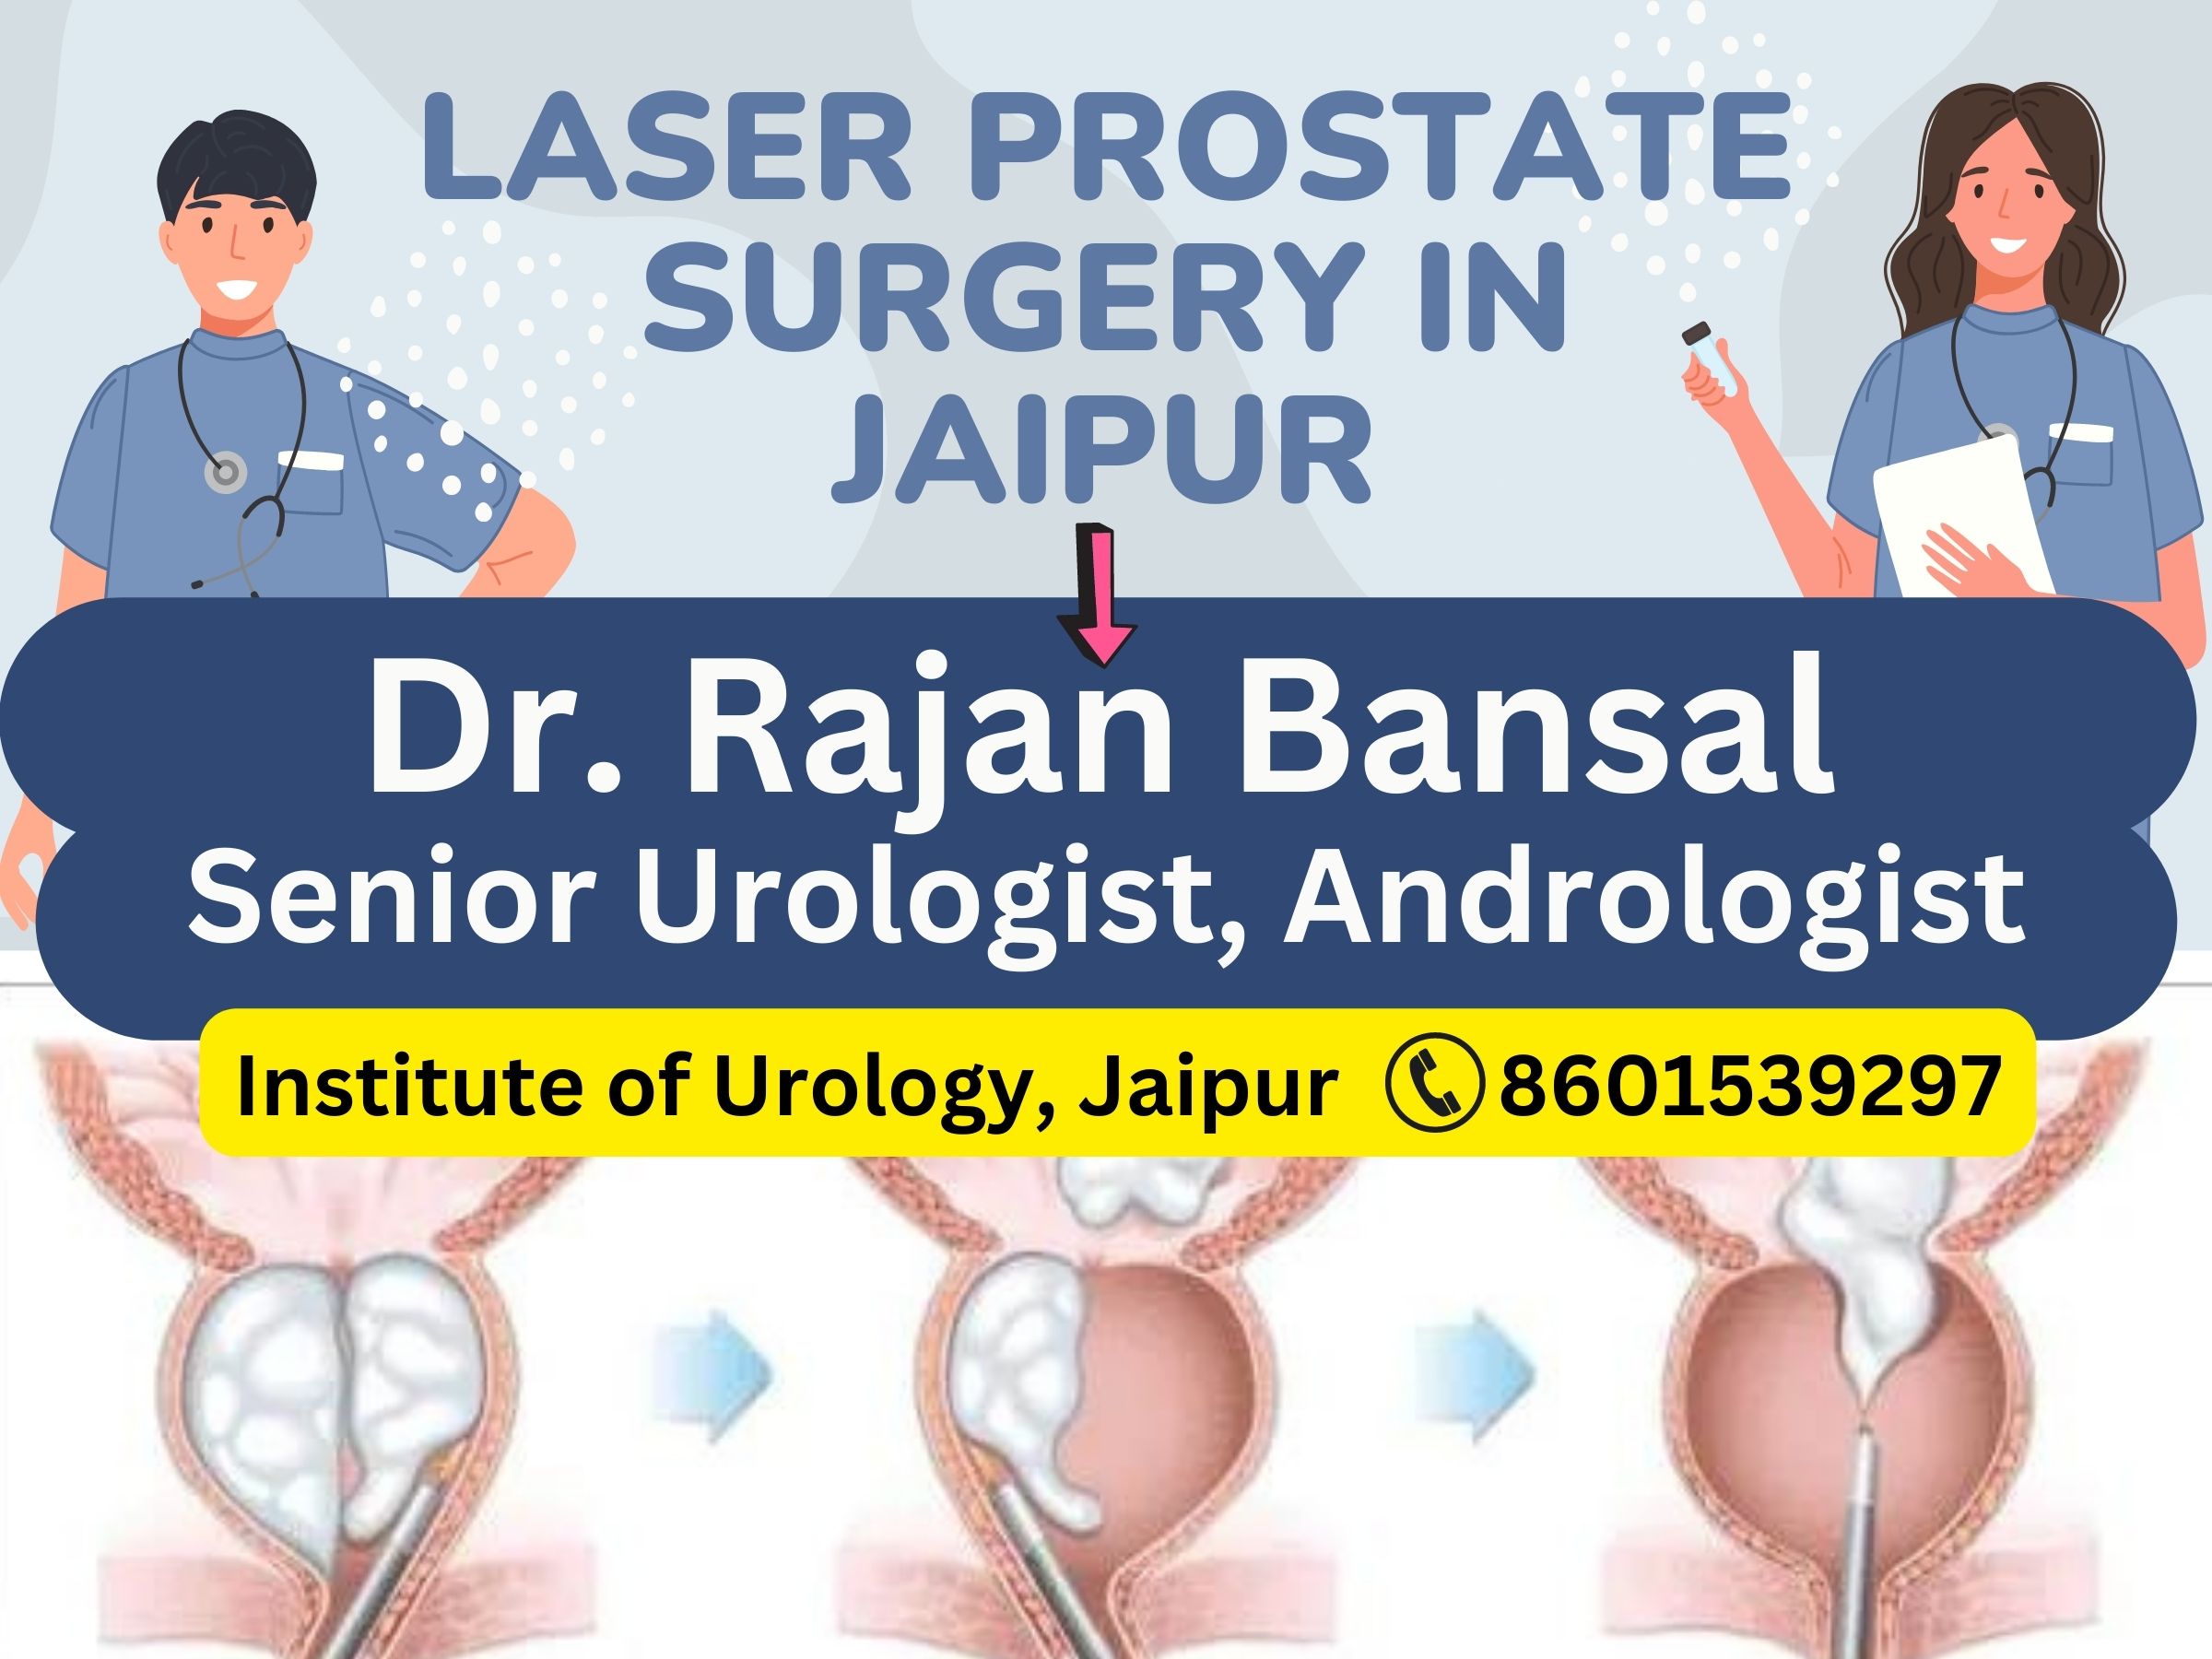 Dr. Rajan Bansal Best Doctor for Prostate Surgery in Jaipur BPH Prostate enlargement treatment